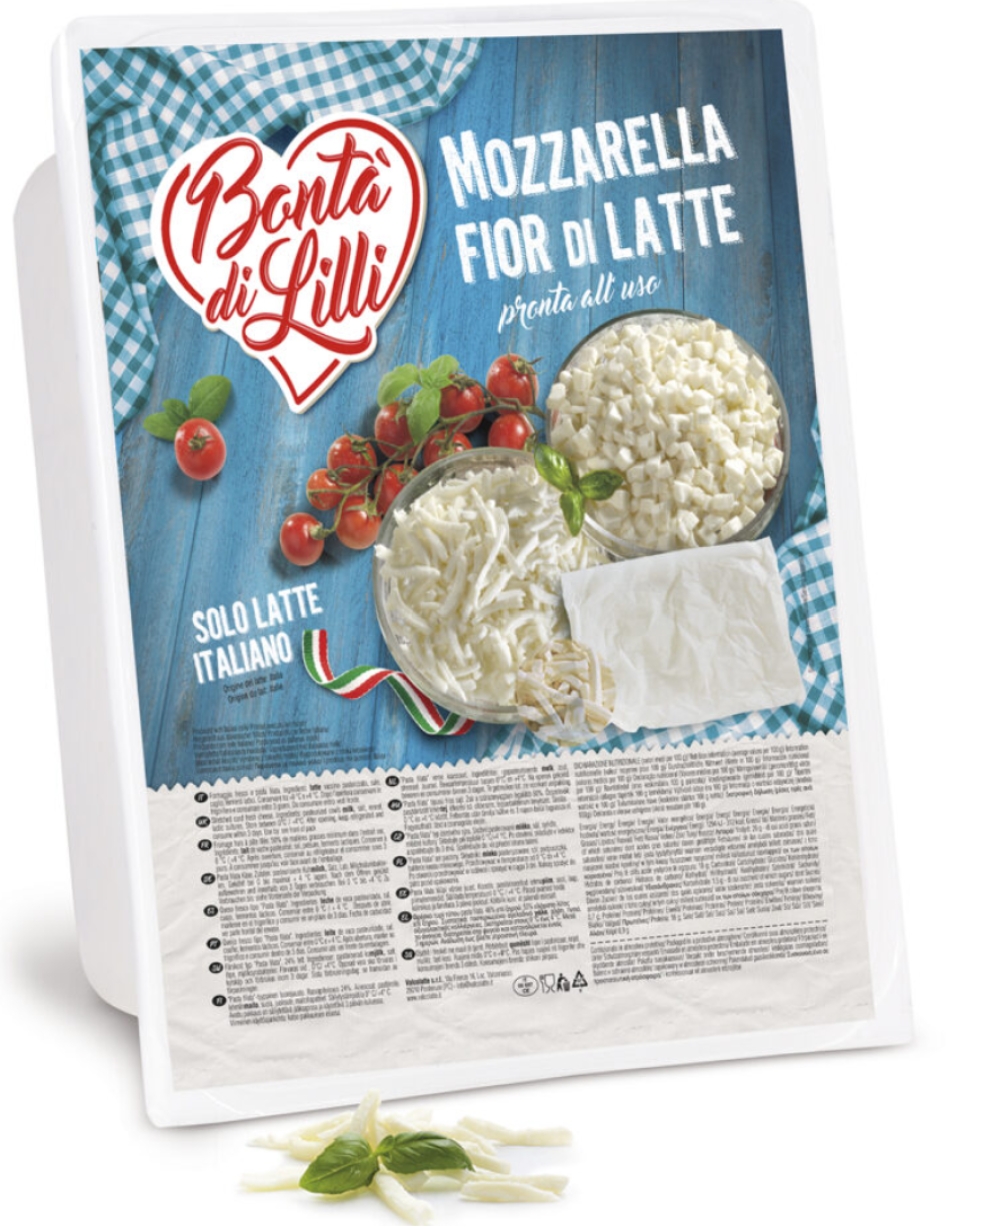 Mozzarella Julienne 2,5 Kg - Valcolatte, 80750100, Fersk Ost, Mozzarella til Pizza, Valcolatte, 106031809